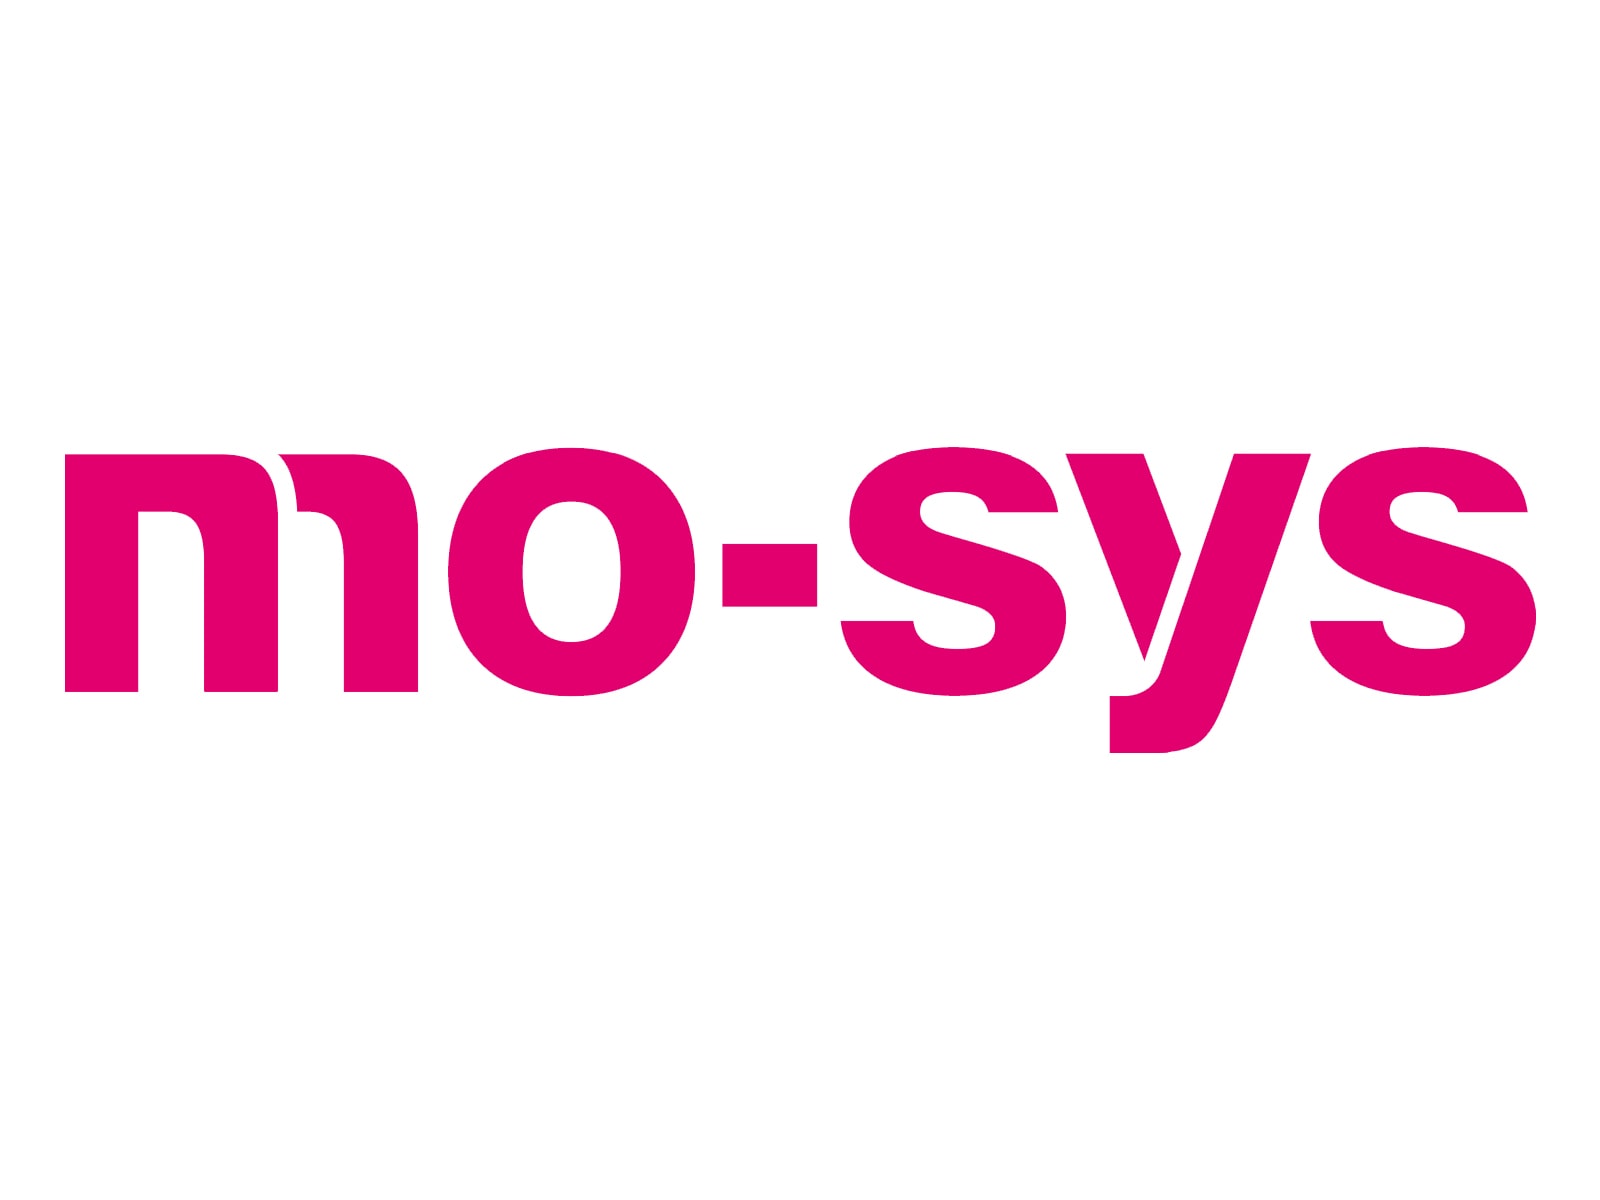 Mo-Sys